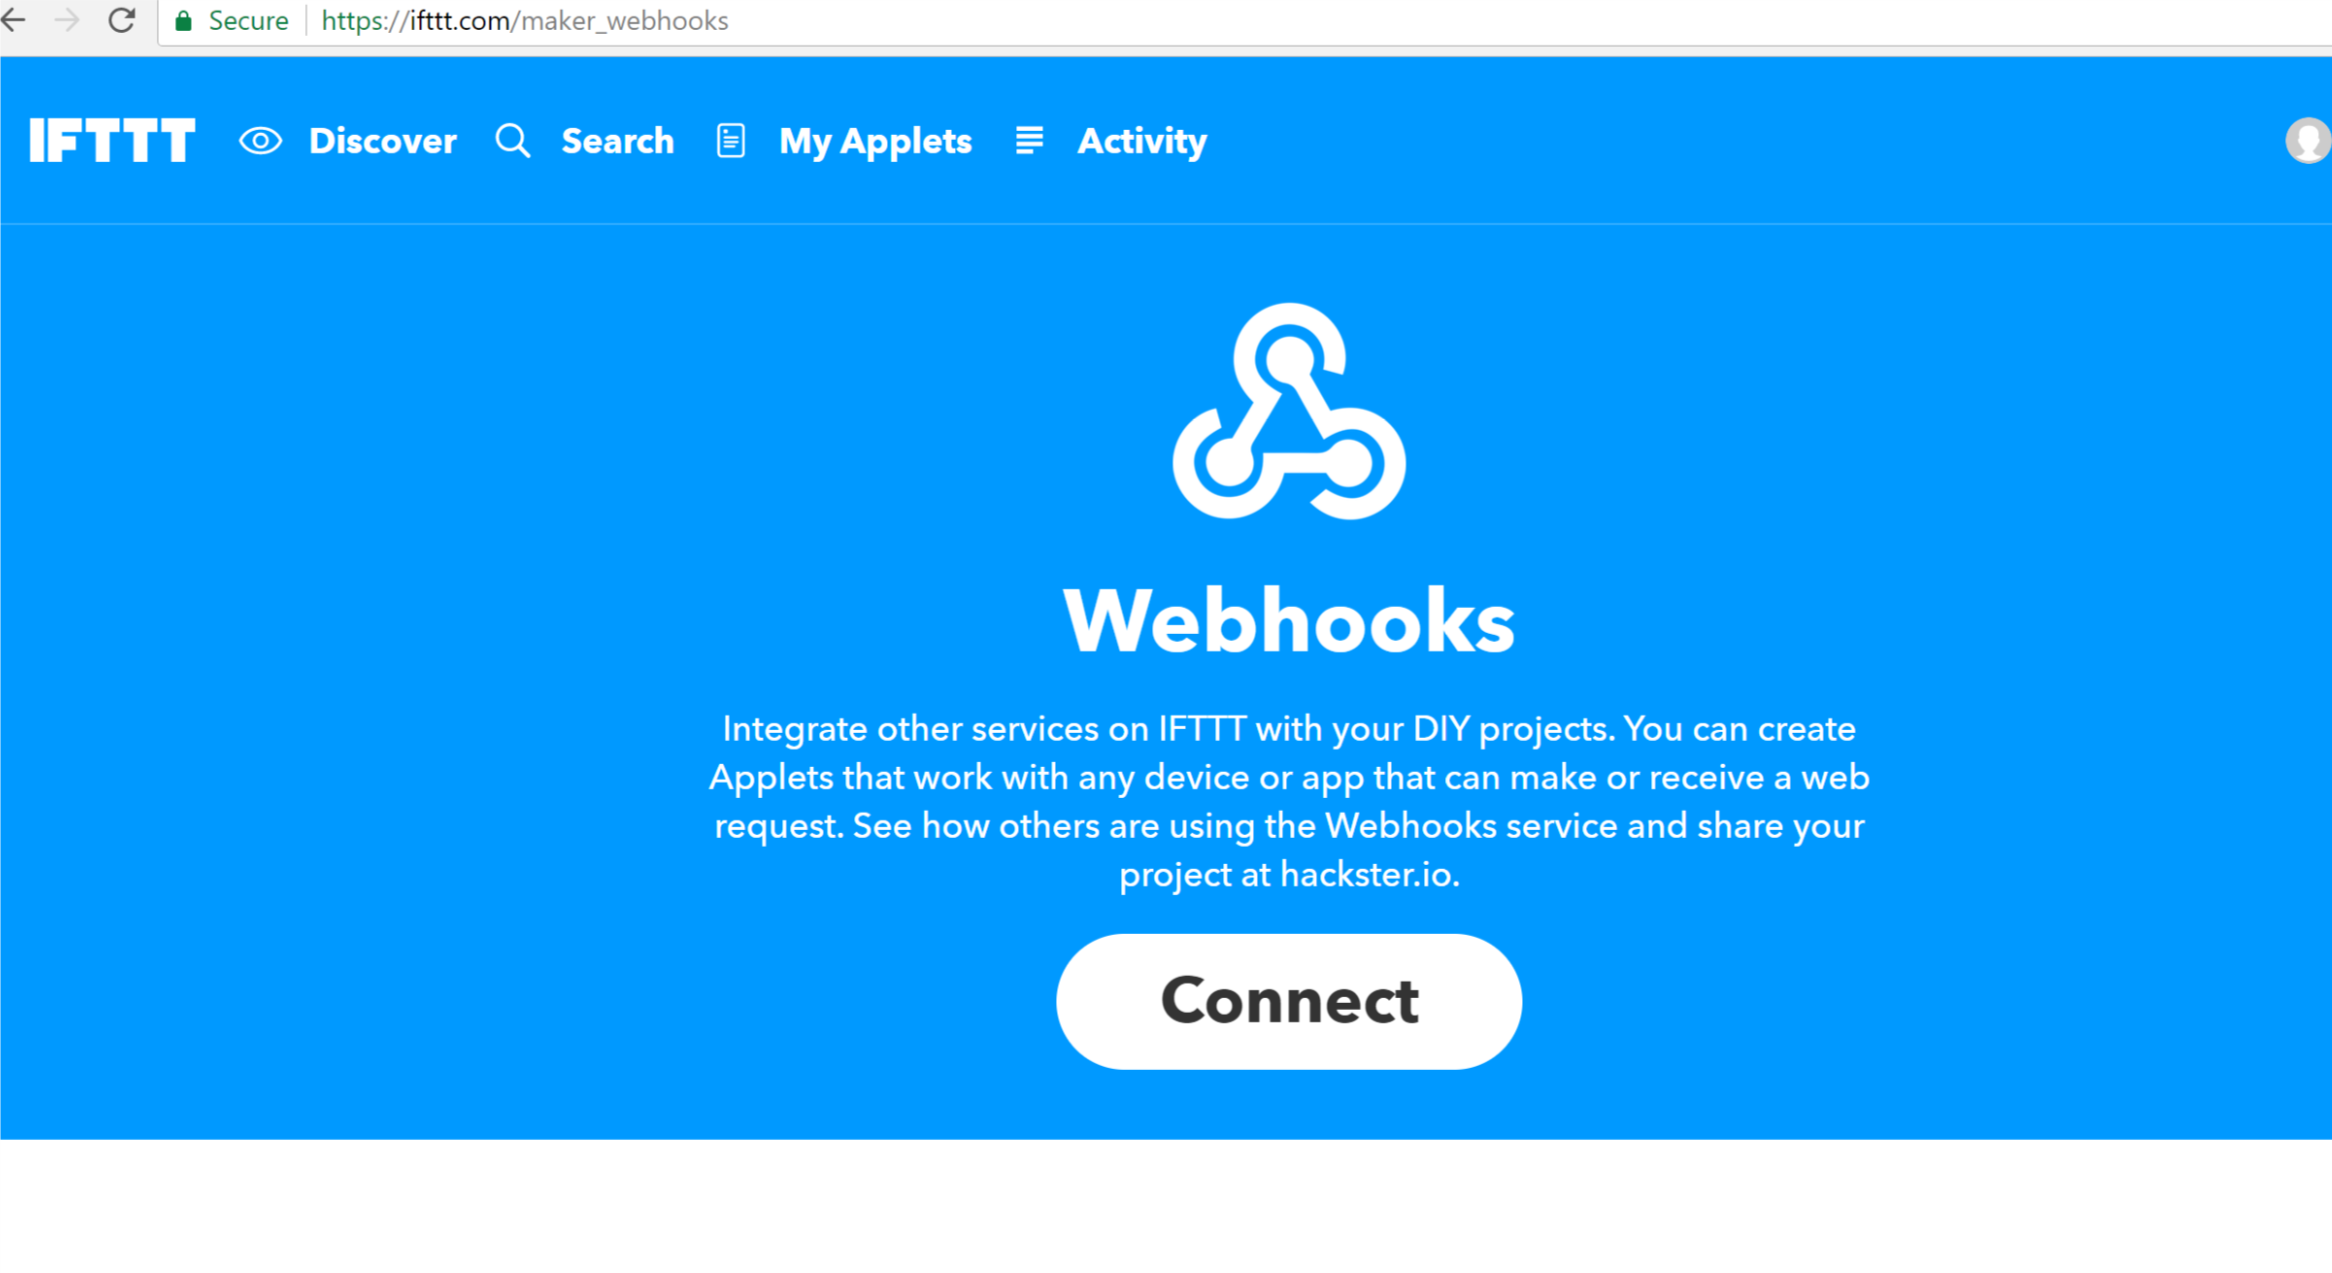 Connect Webhooks